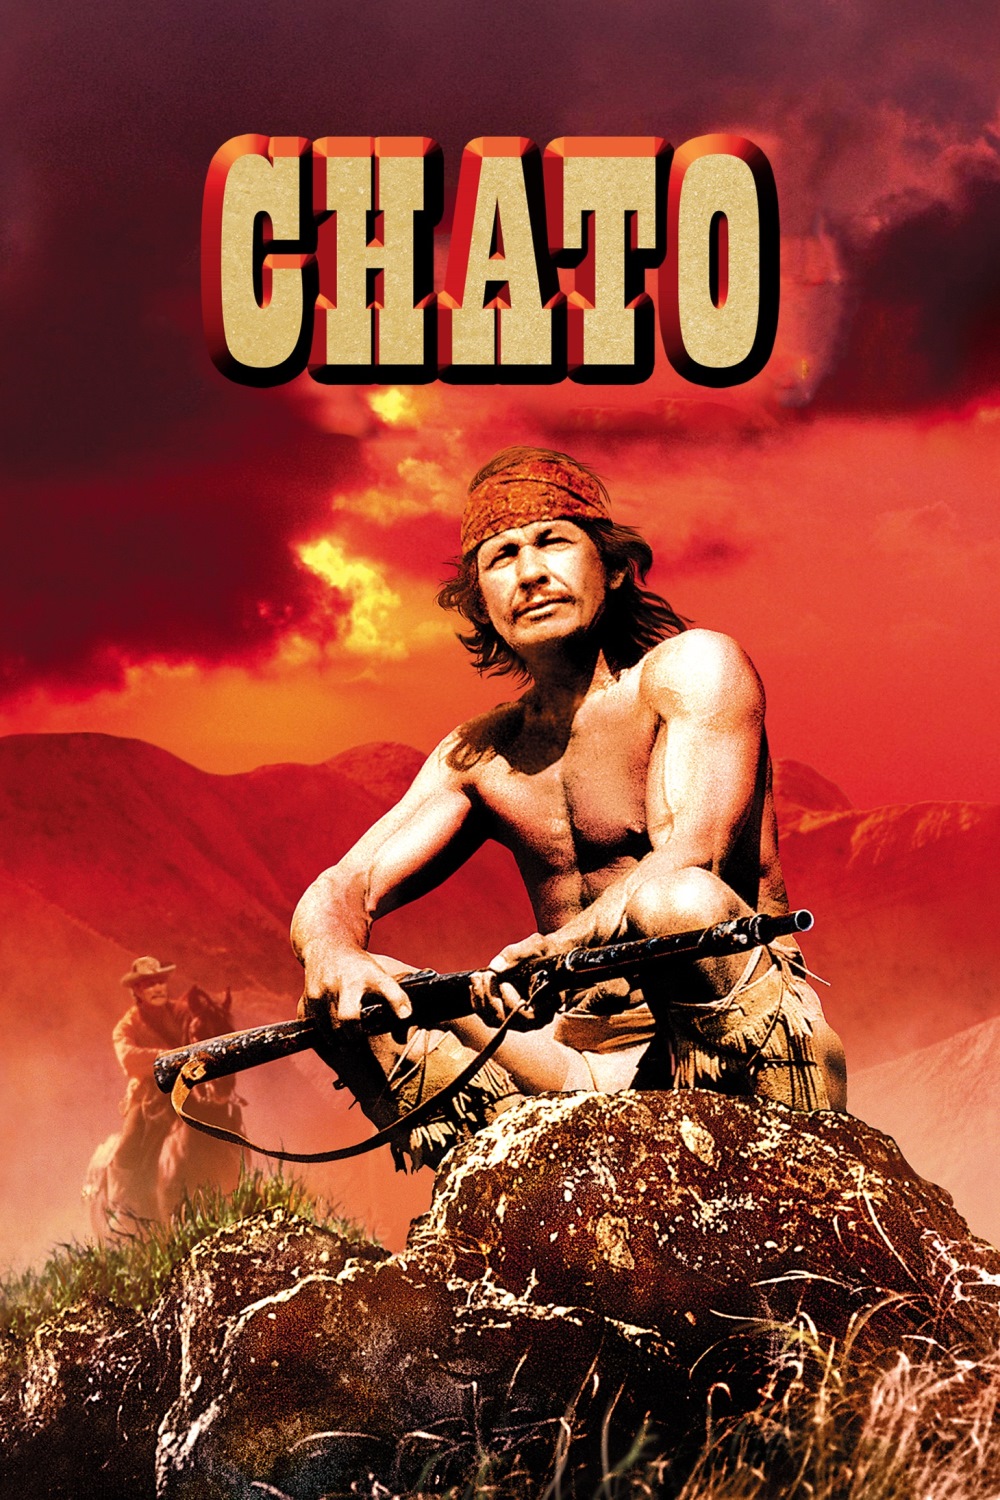 Chato [HD] (1972)